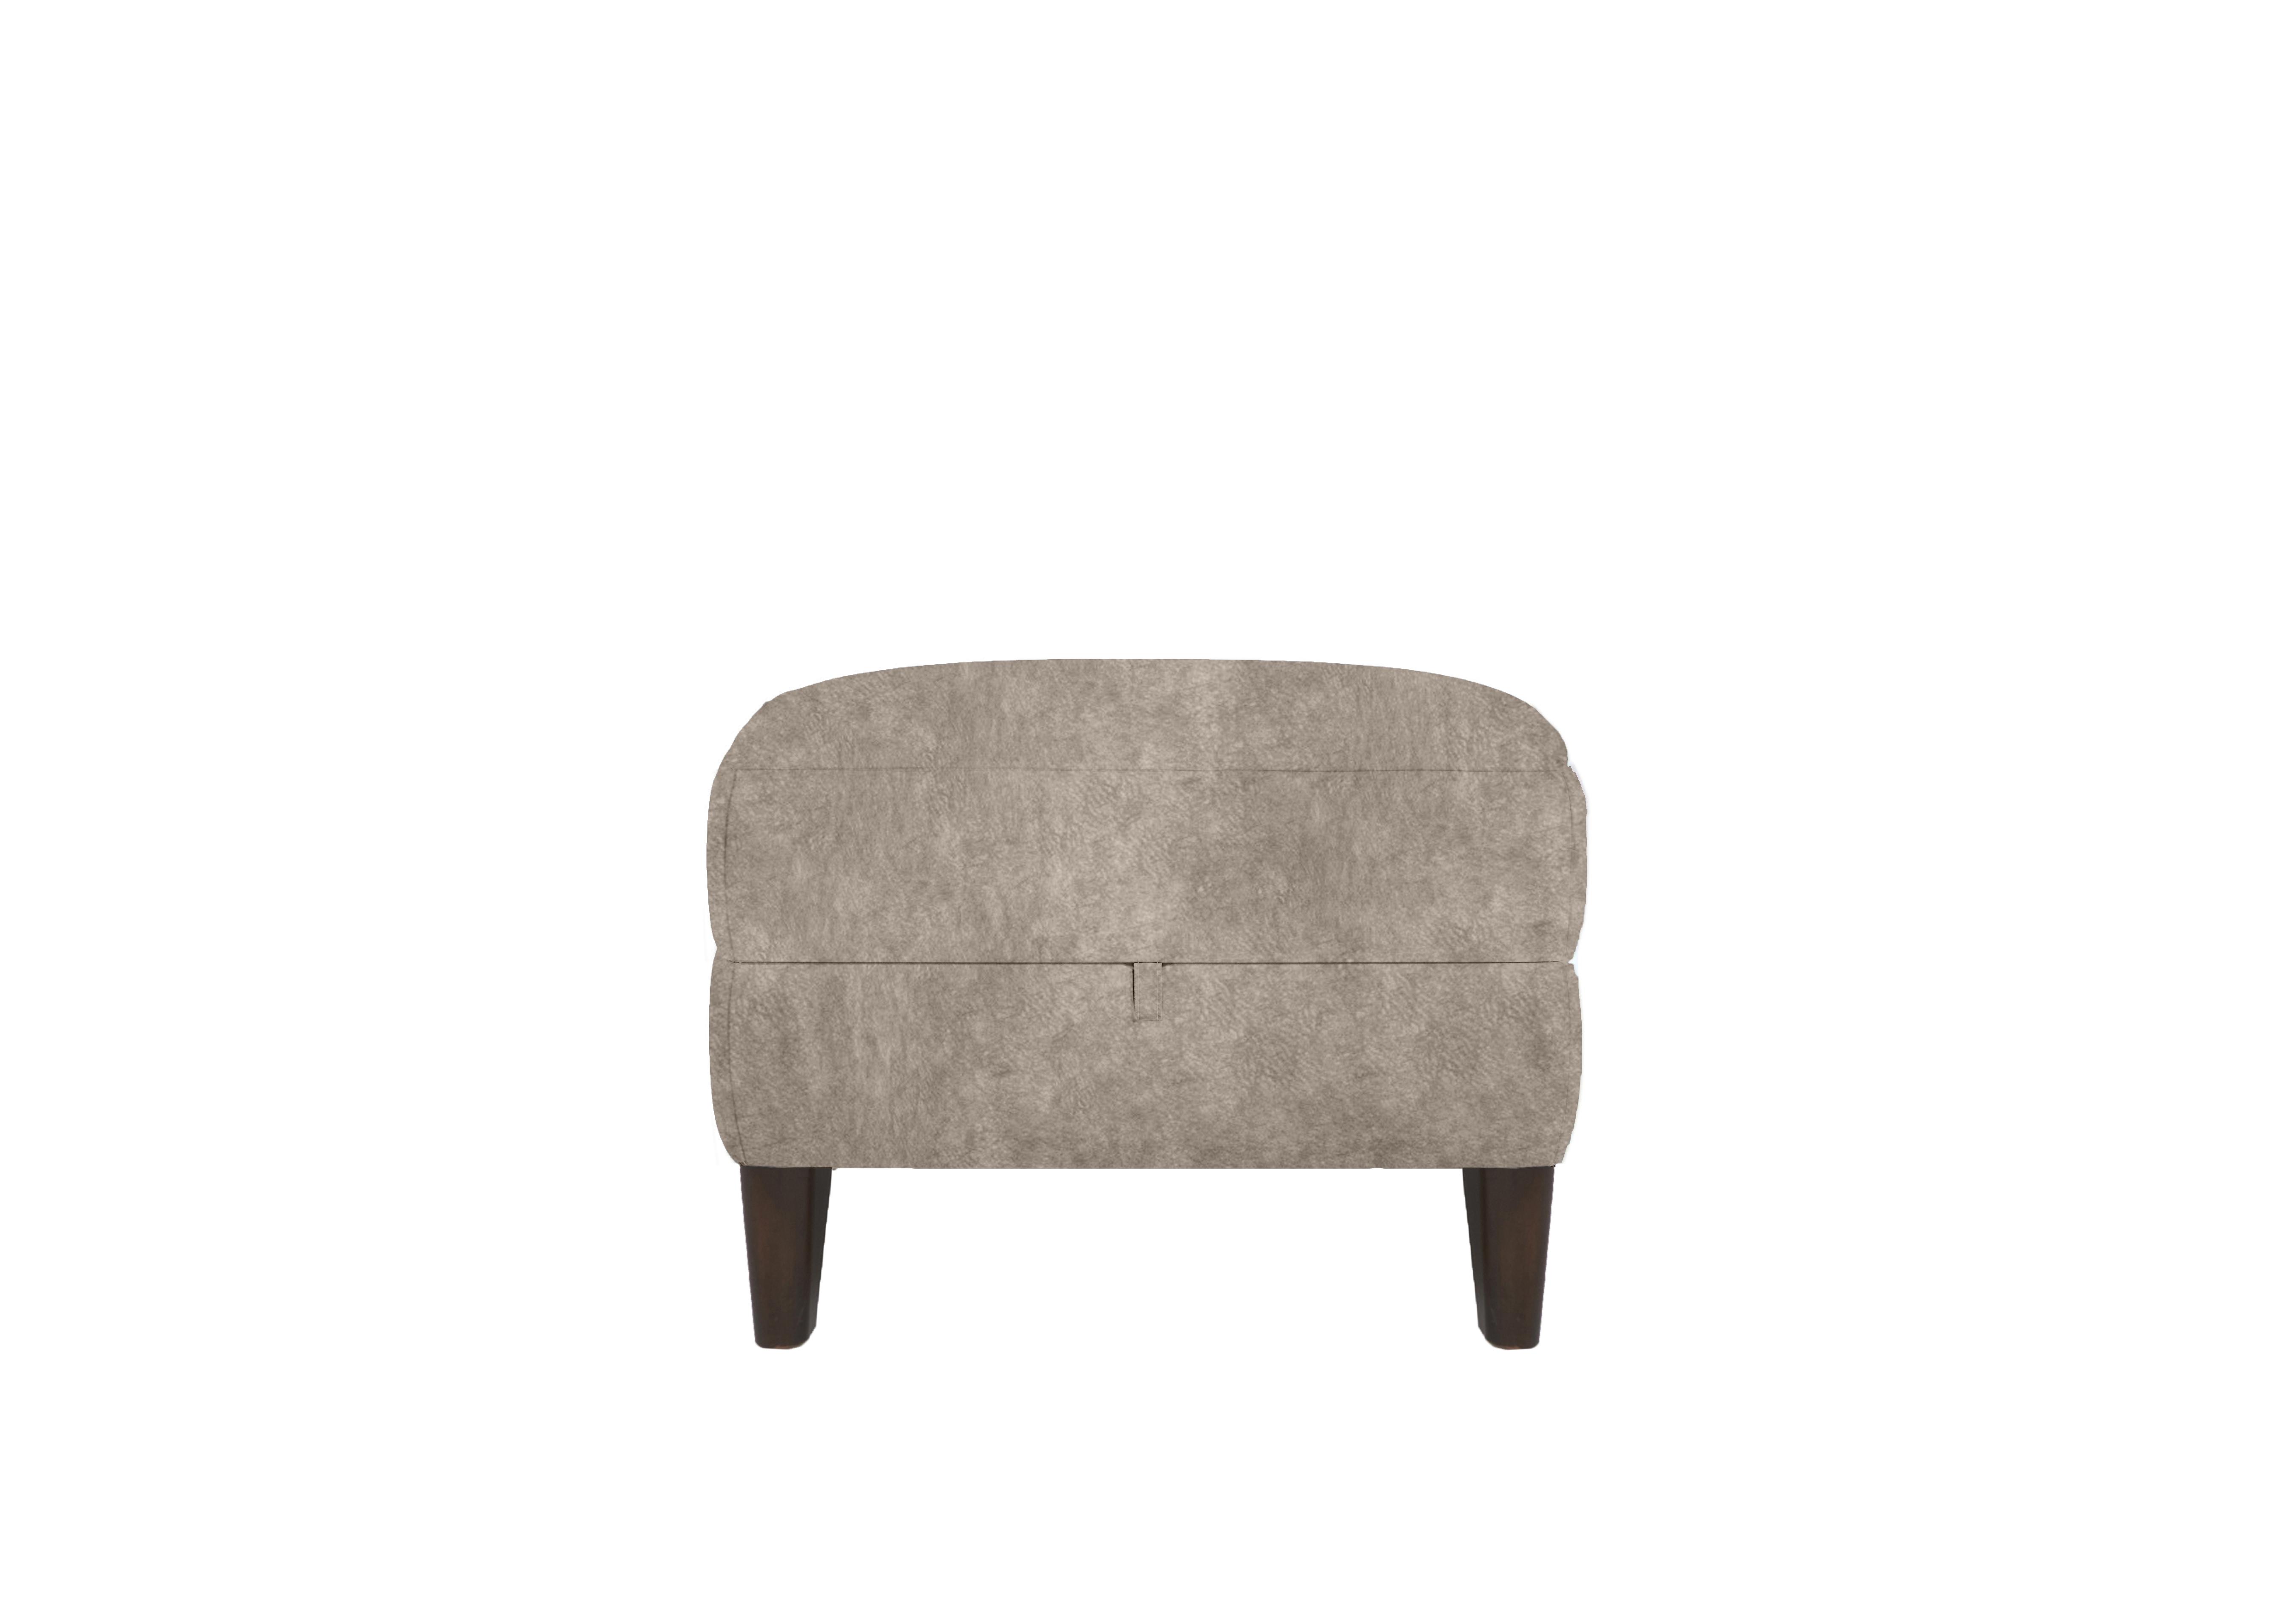 Uno Fabric Storage Footstool in Bfa-Bnn-R29 Mink on Furniture Village